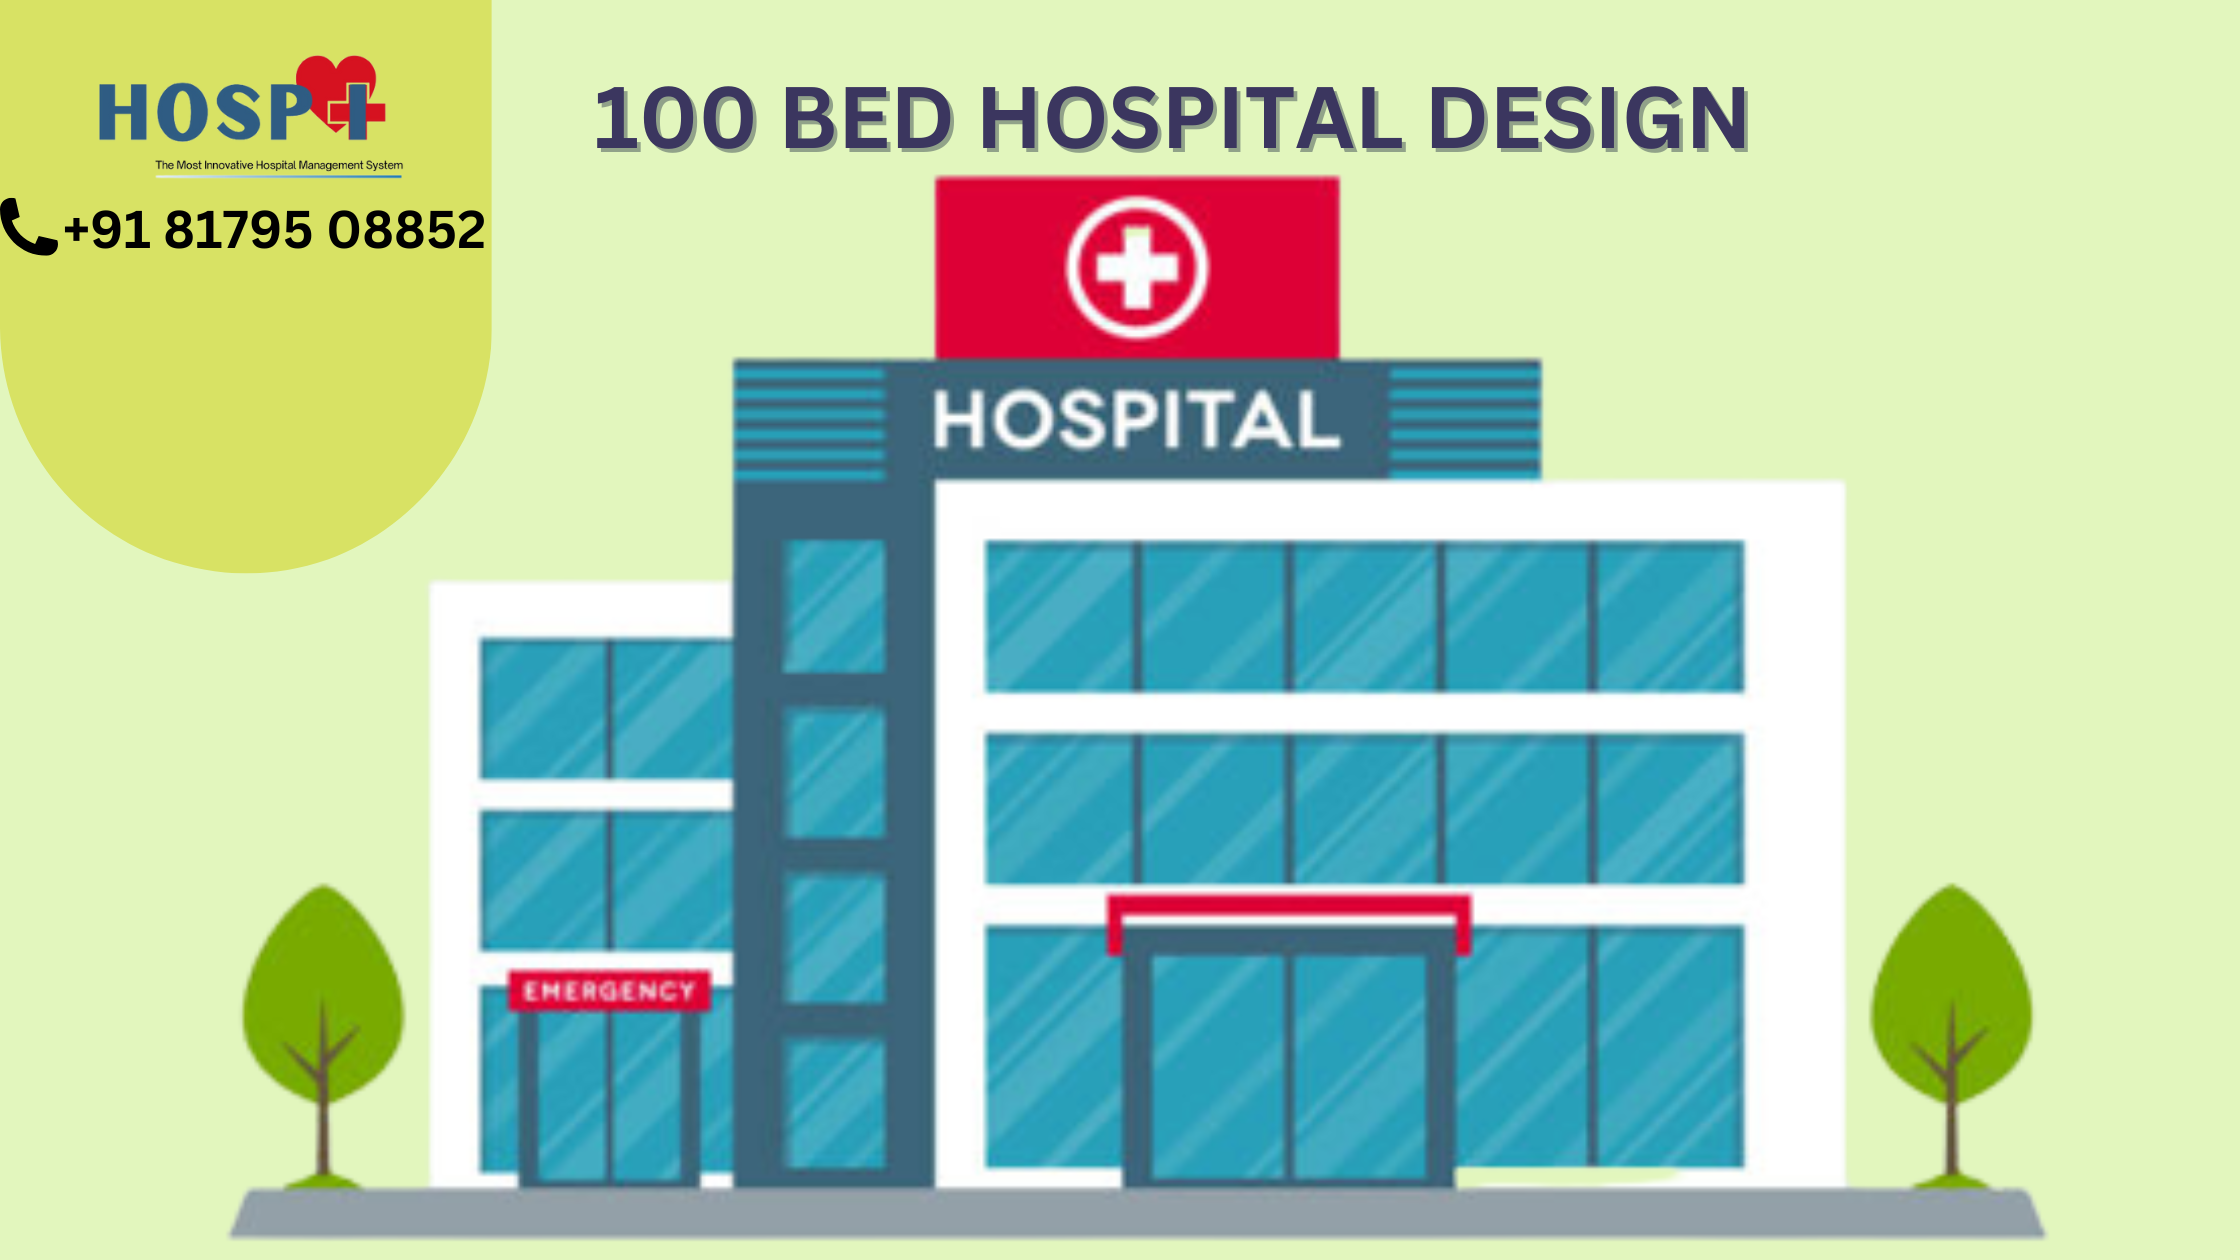 100 bed hospital design